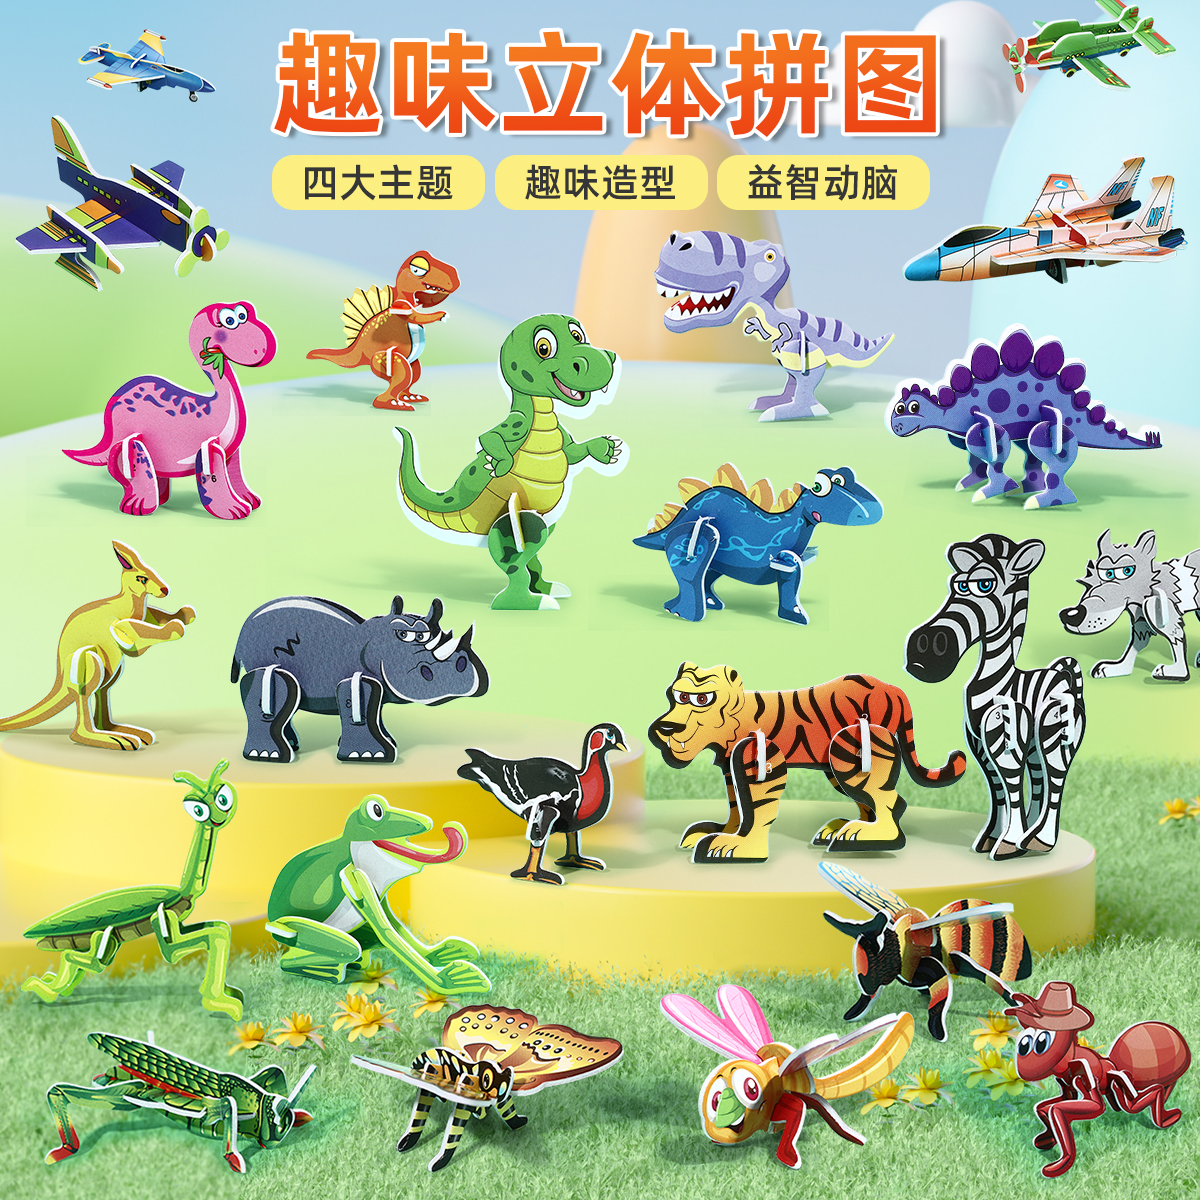 3d昆虫立体拼图3到6岁儿童蒙氏早教益智手工diy玩具恐龙拼装模型2